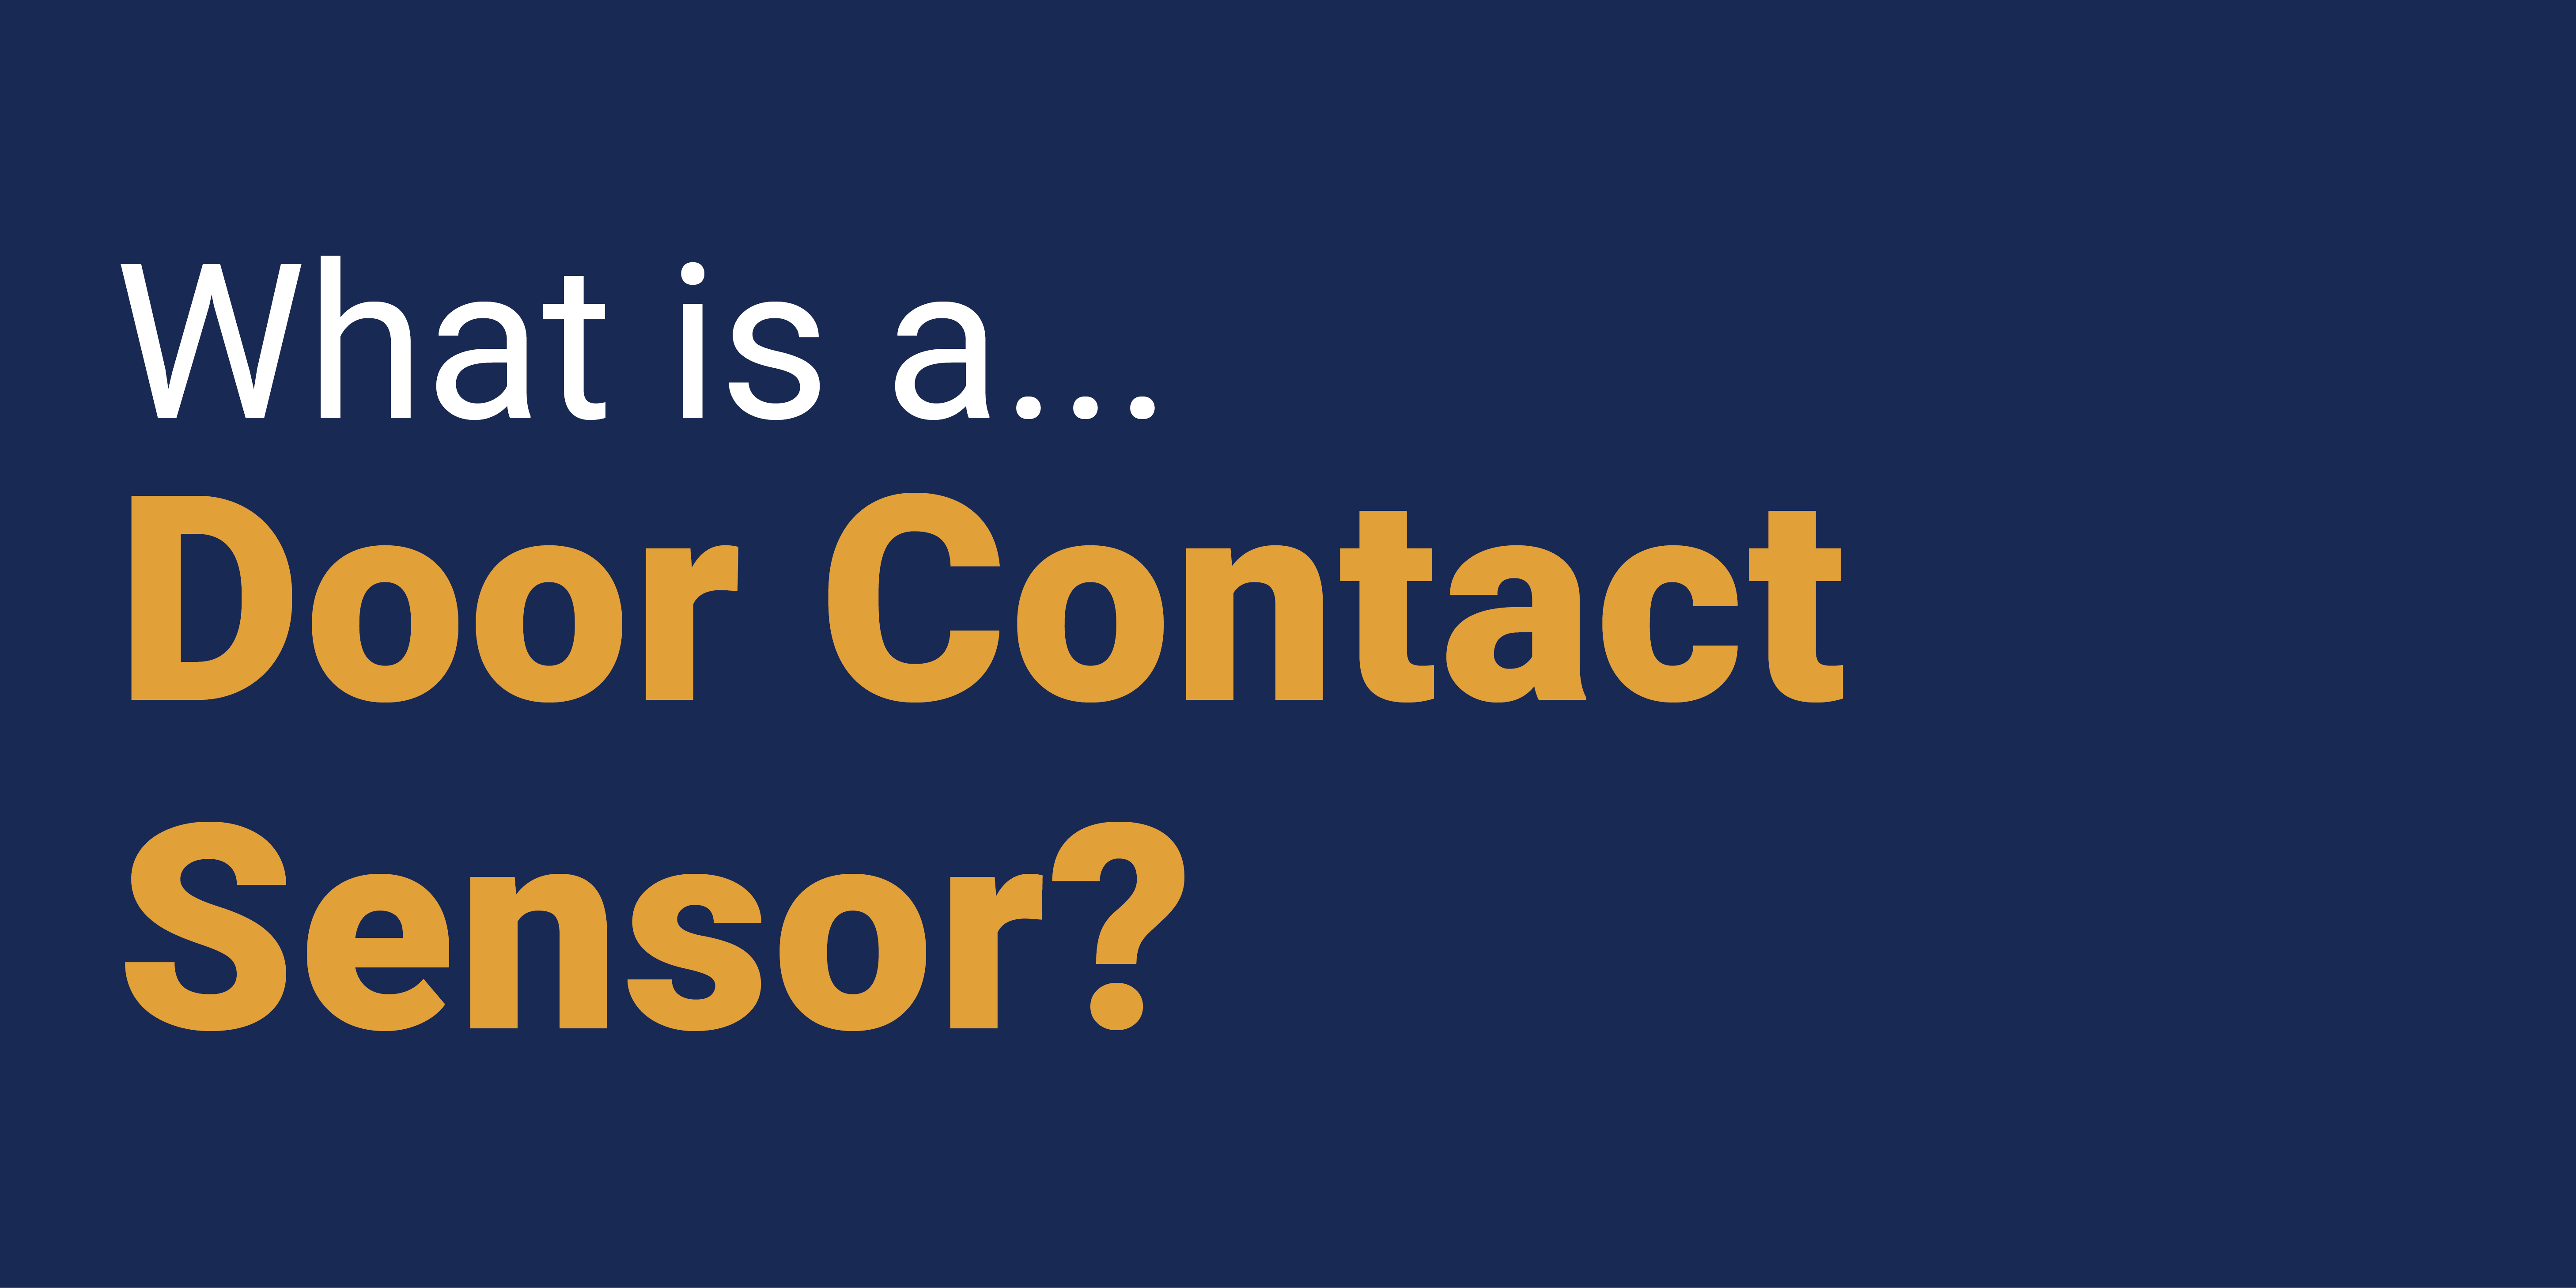 What is a Door Contact Sensor?